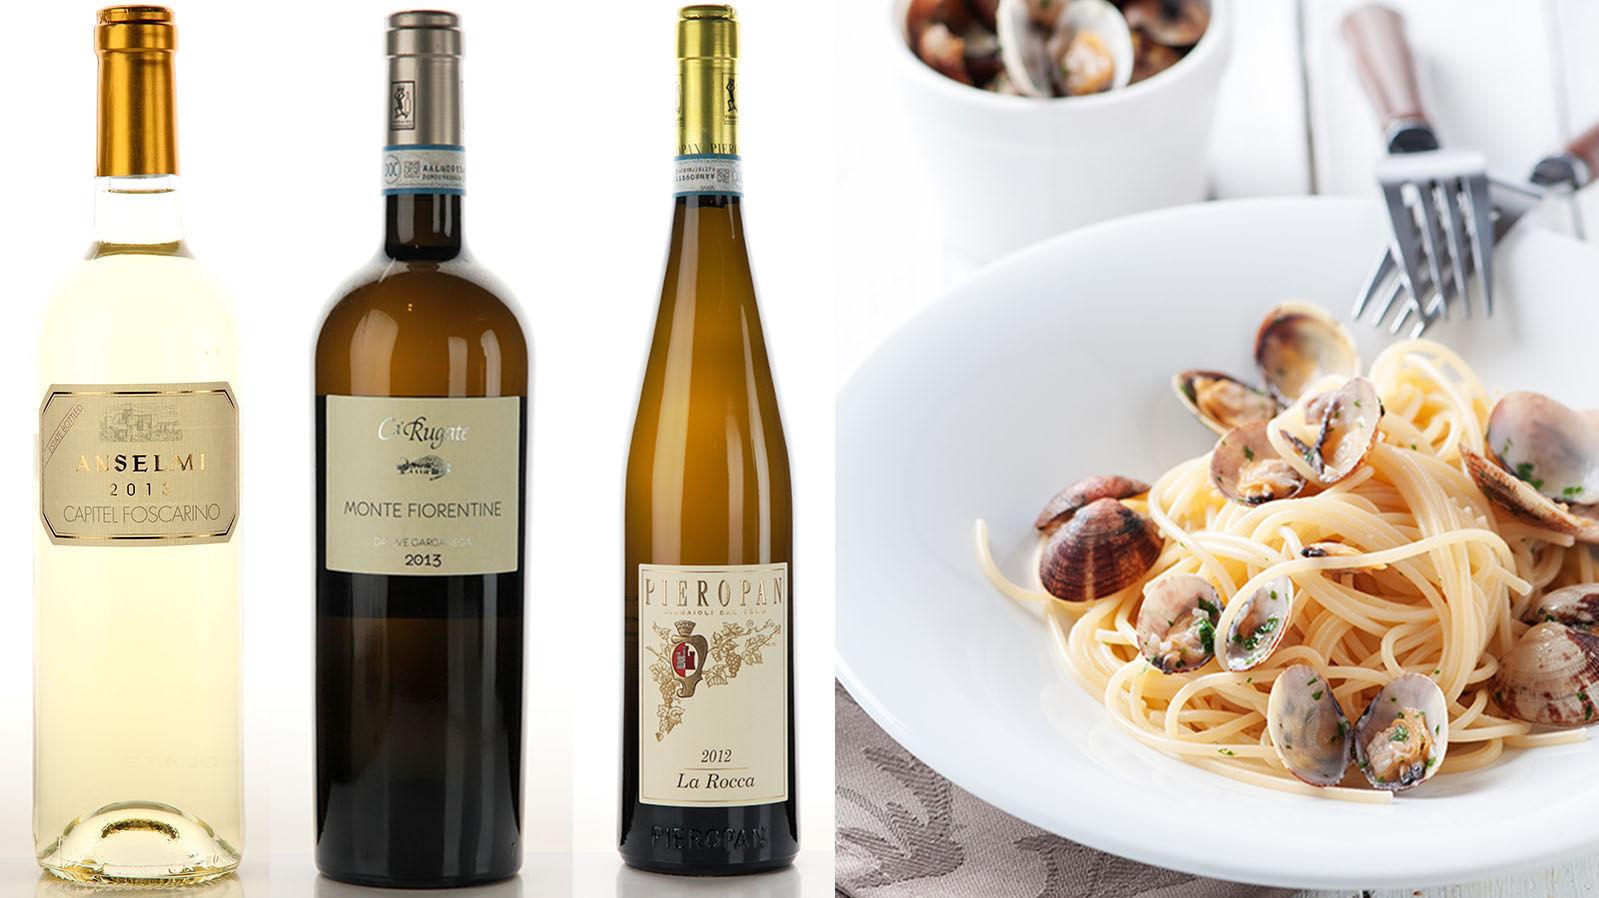 VINO VINO: Italienske viner kan gjerne serveres til italiensk mat eller i italiensk mat - prøv venetiansk vin i en spagetti vongole. Foto: Produsentene/NTB Scanpix.